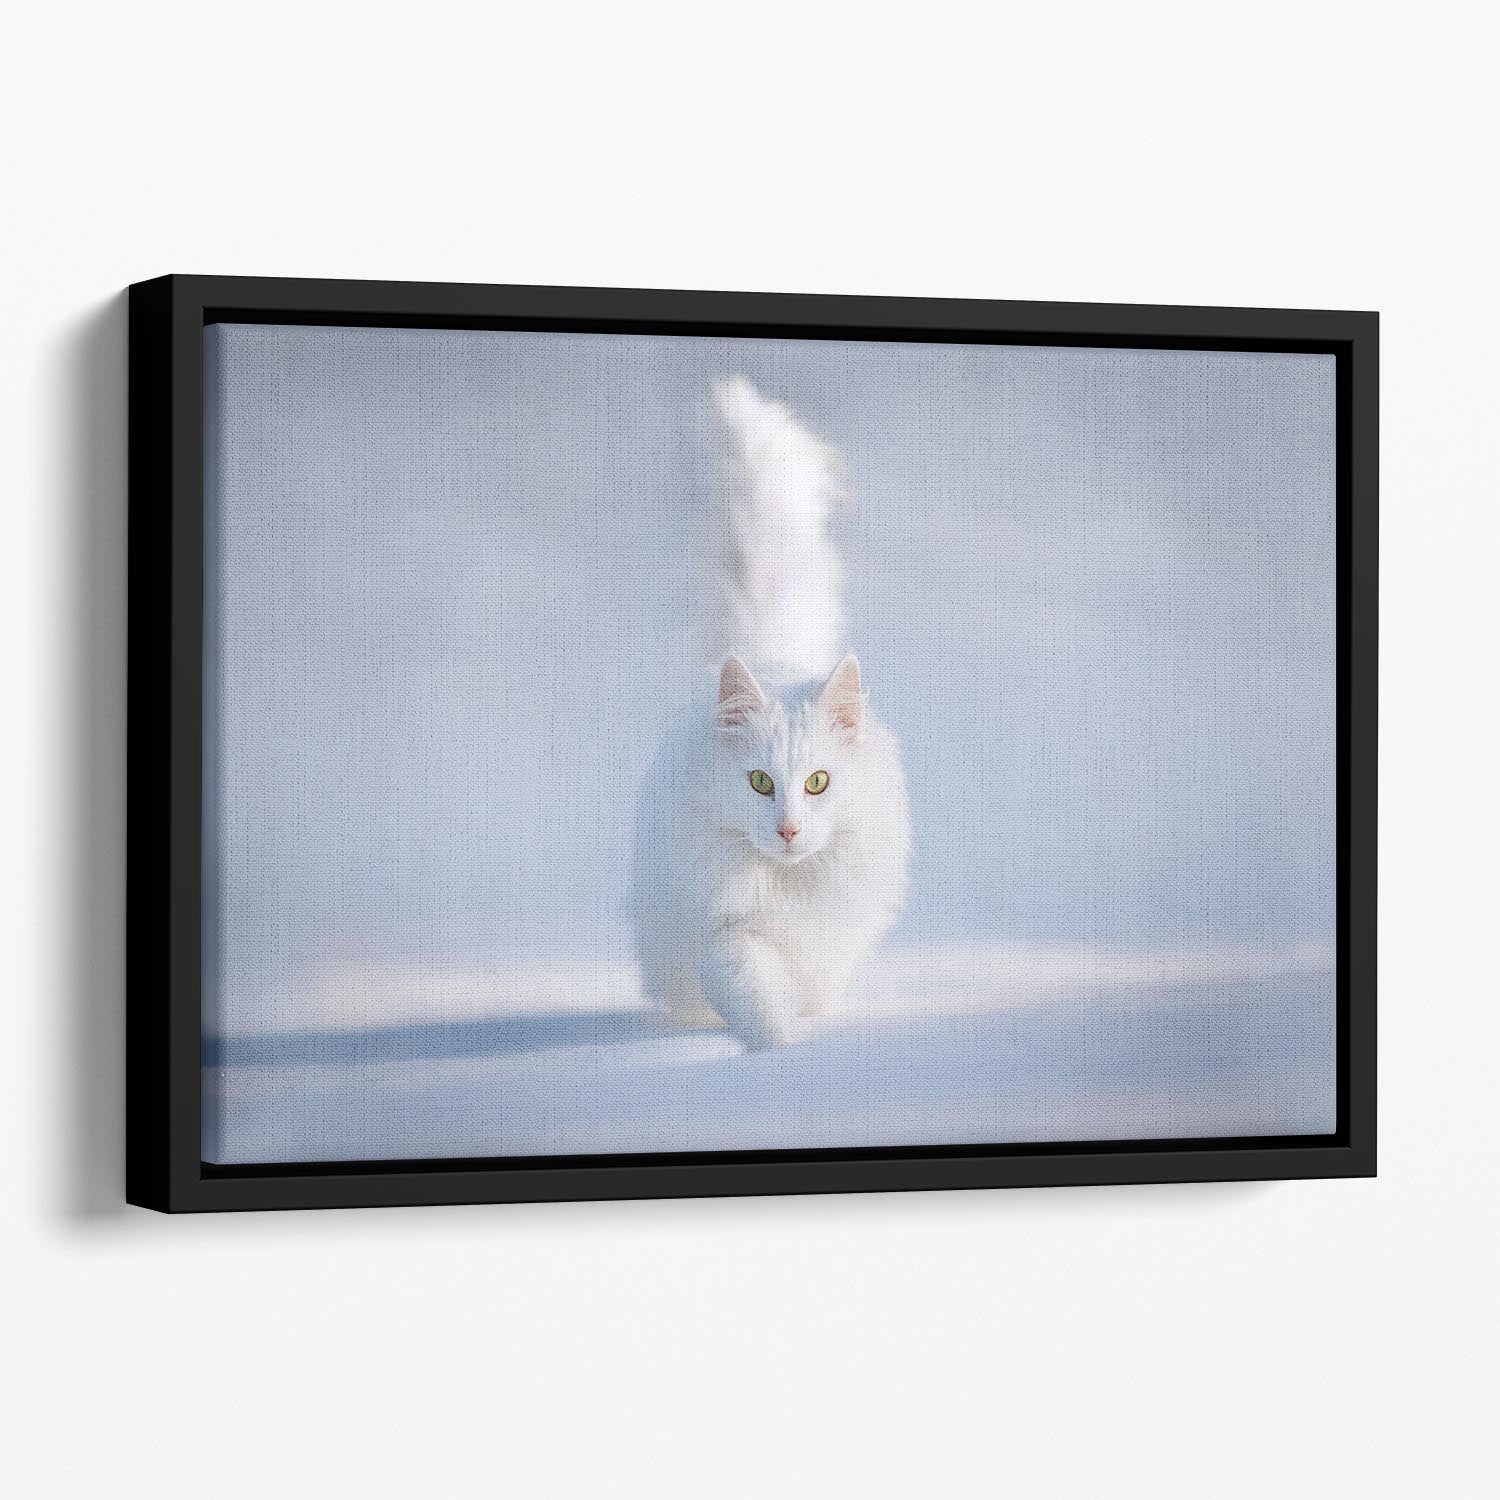 White Kitten Running In Snow Floating Framed Canvas - Canvas Art Rocks - 1